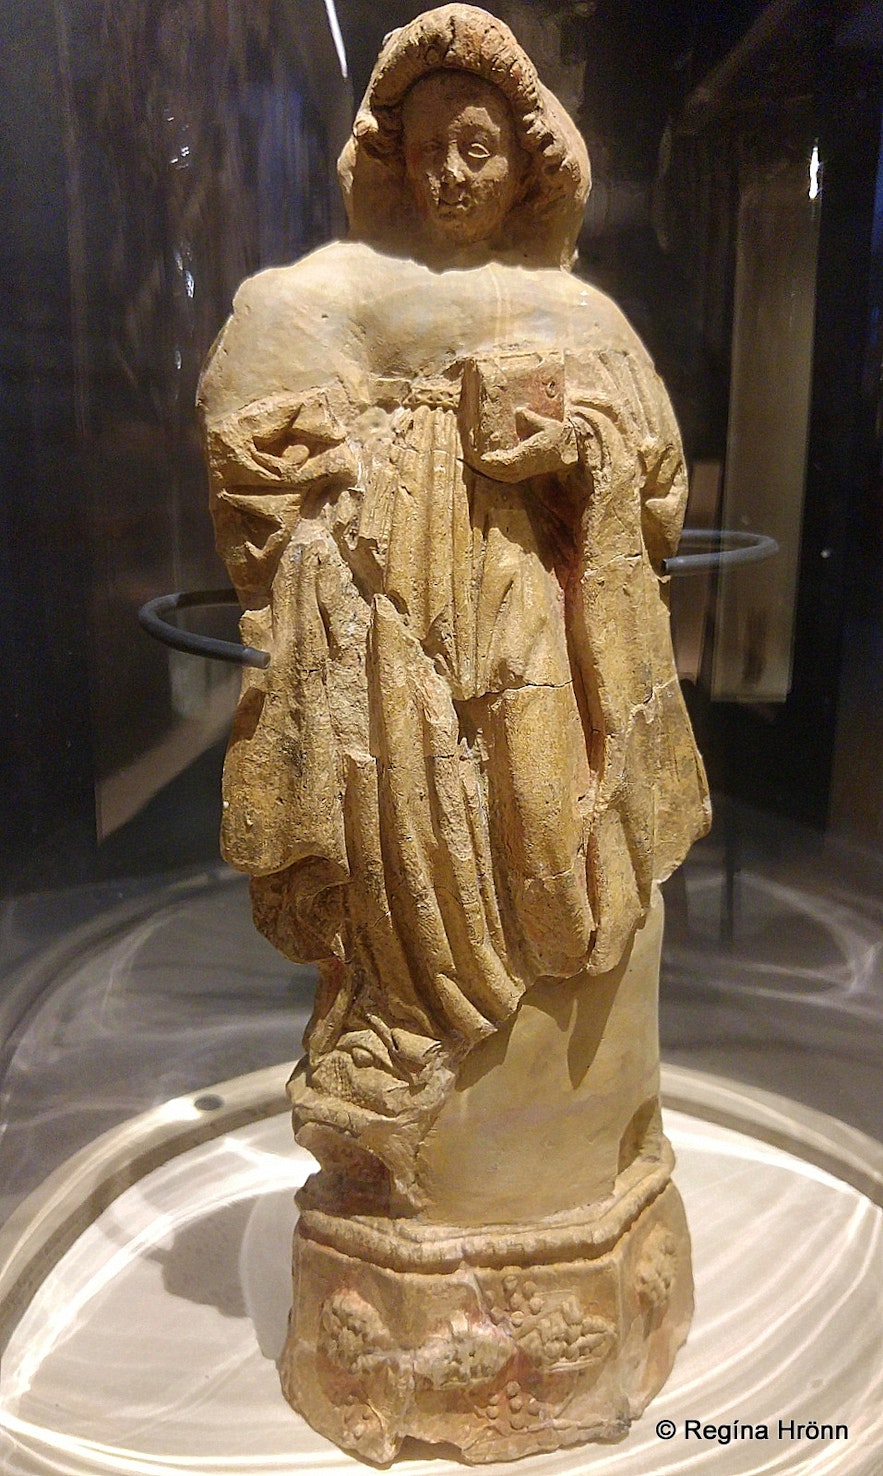 A figure of St. Barbara found at Skriðuklaustur